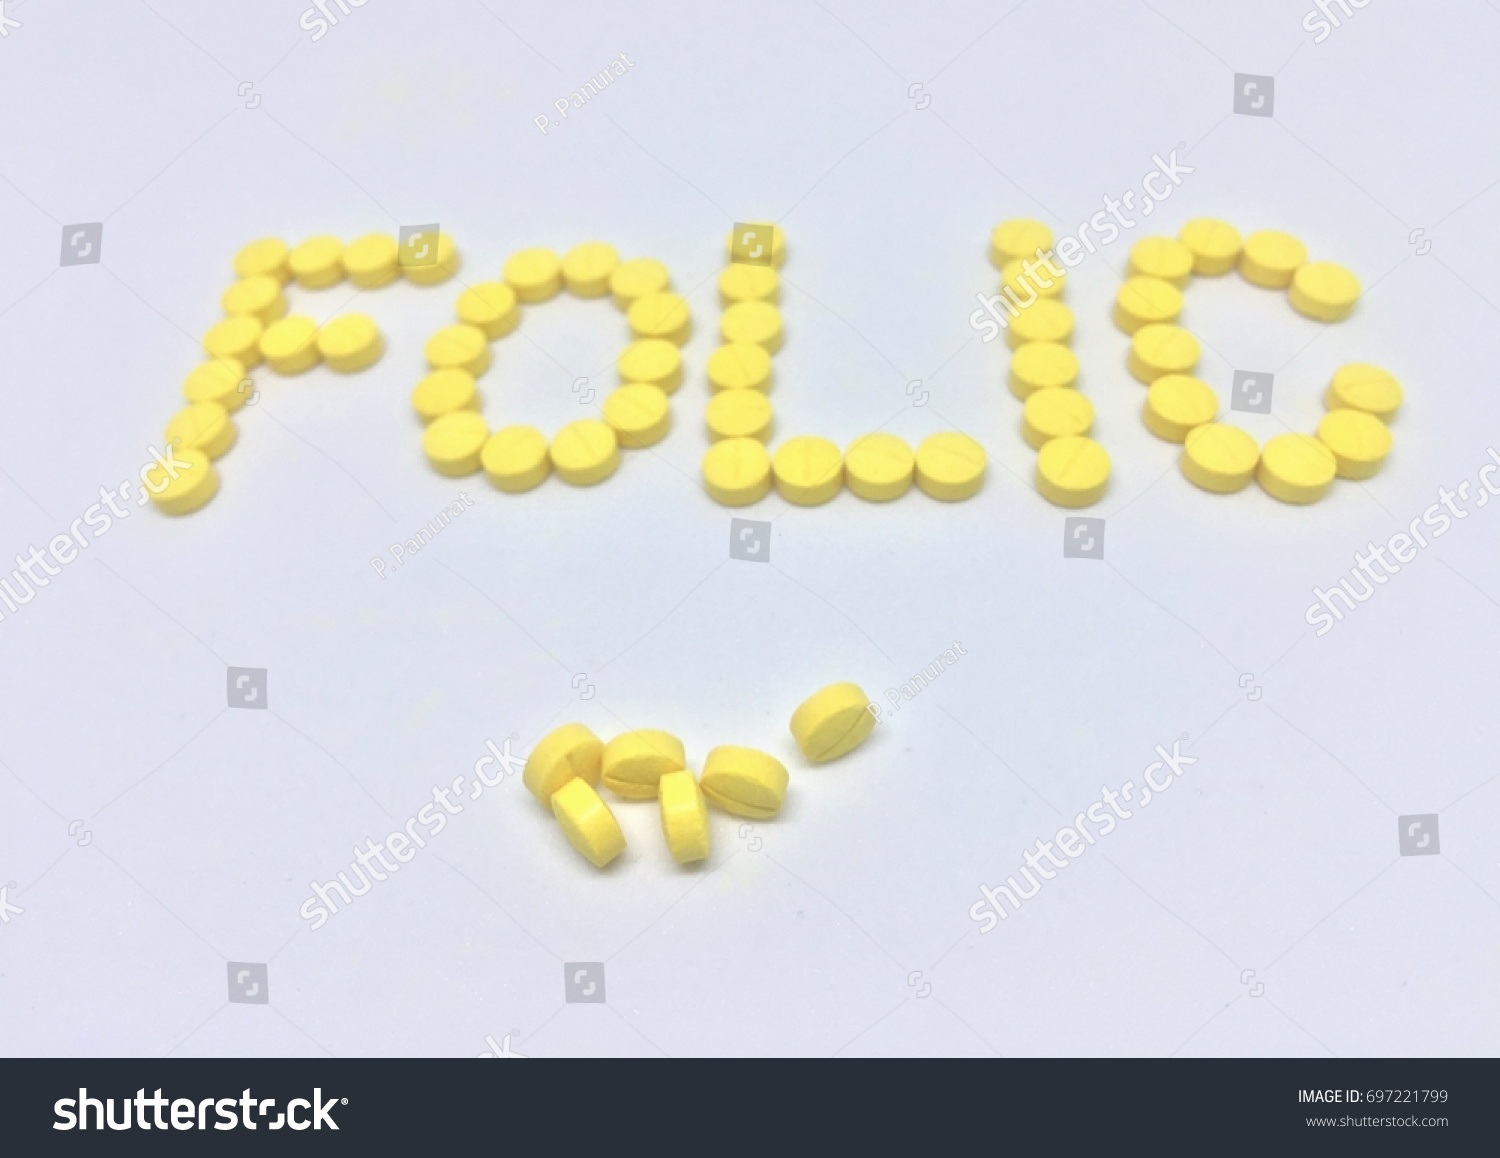 Folic Acid Tablets on White Background  #697221799